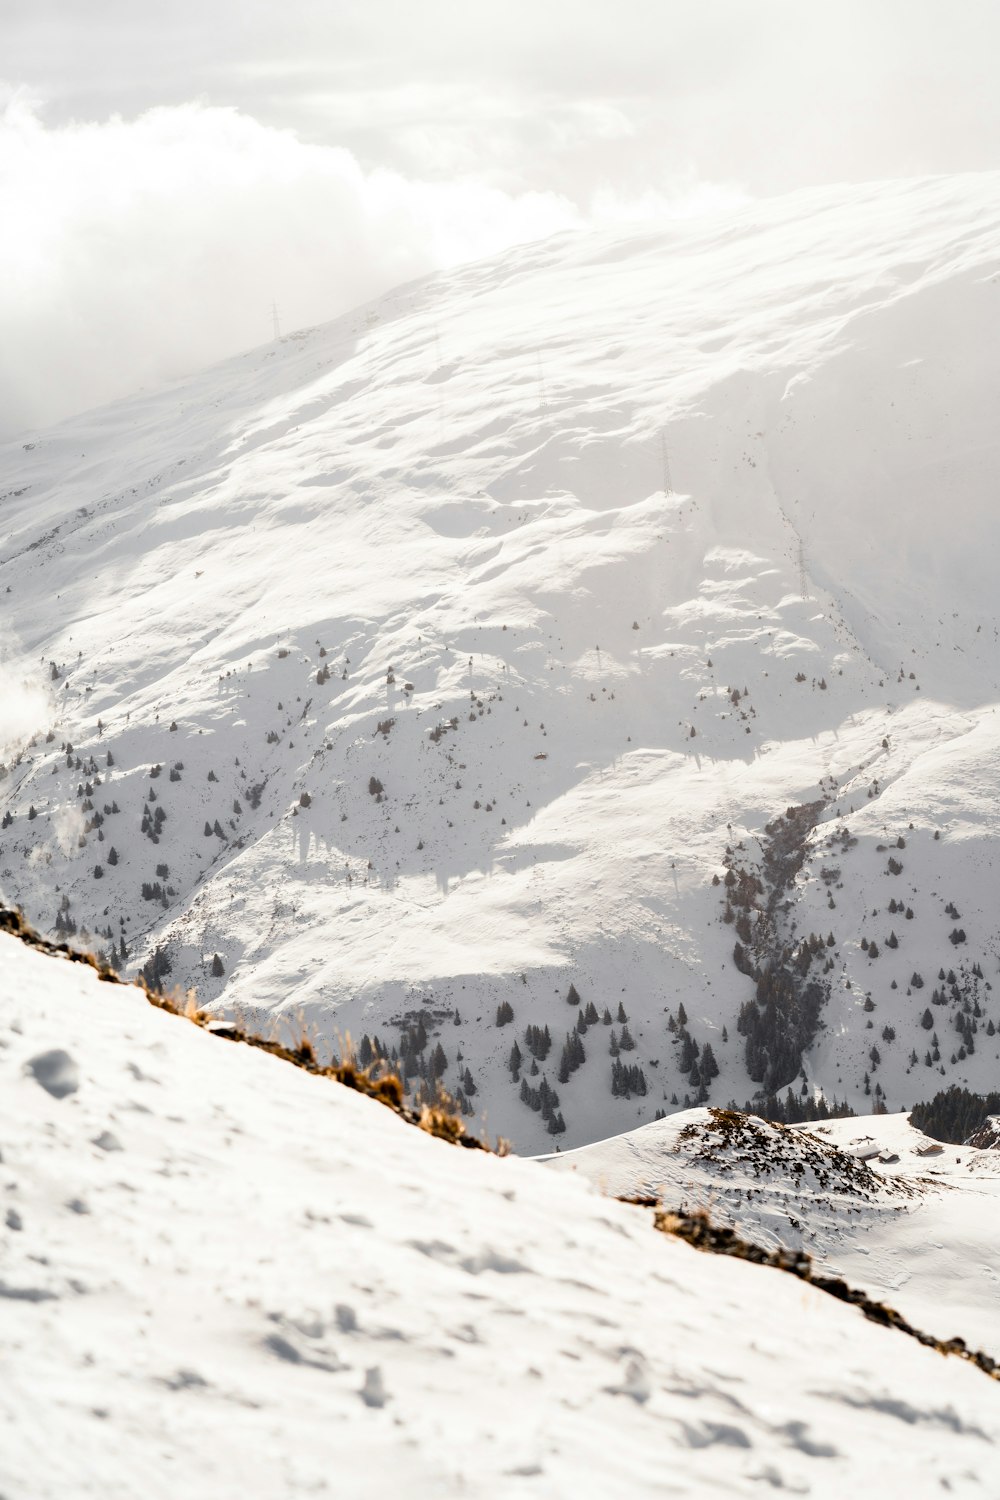 Ein Mann fährt auf Skiern einen schneebedeckten Hang hinunter